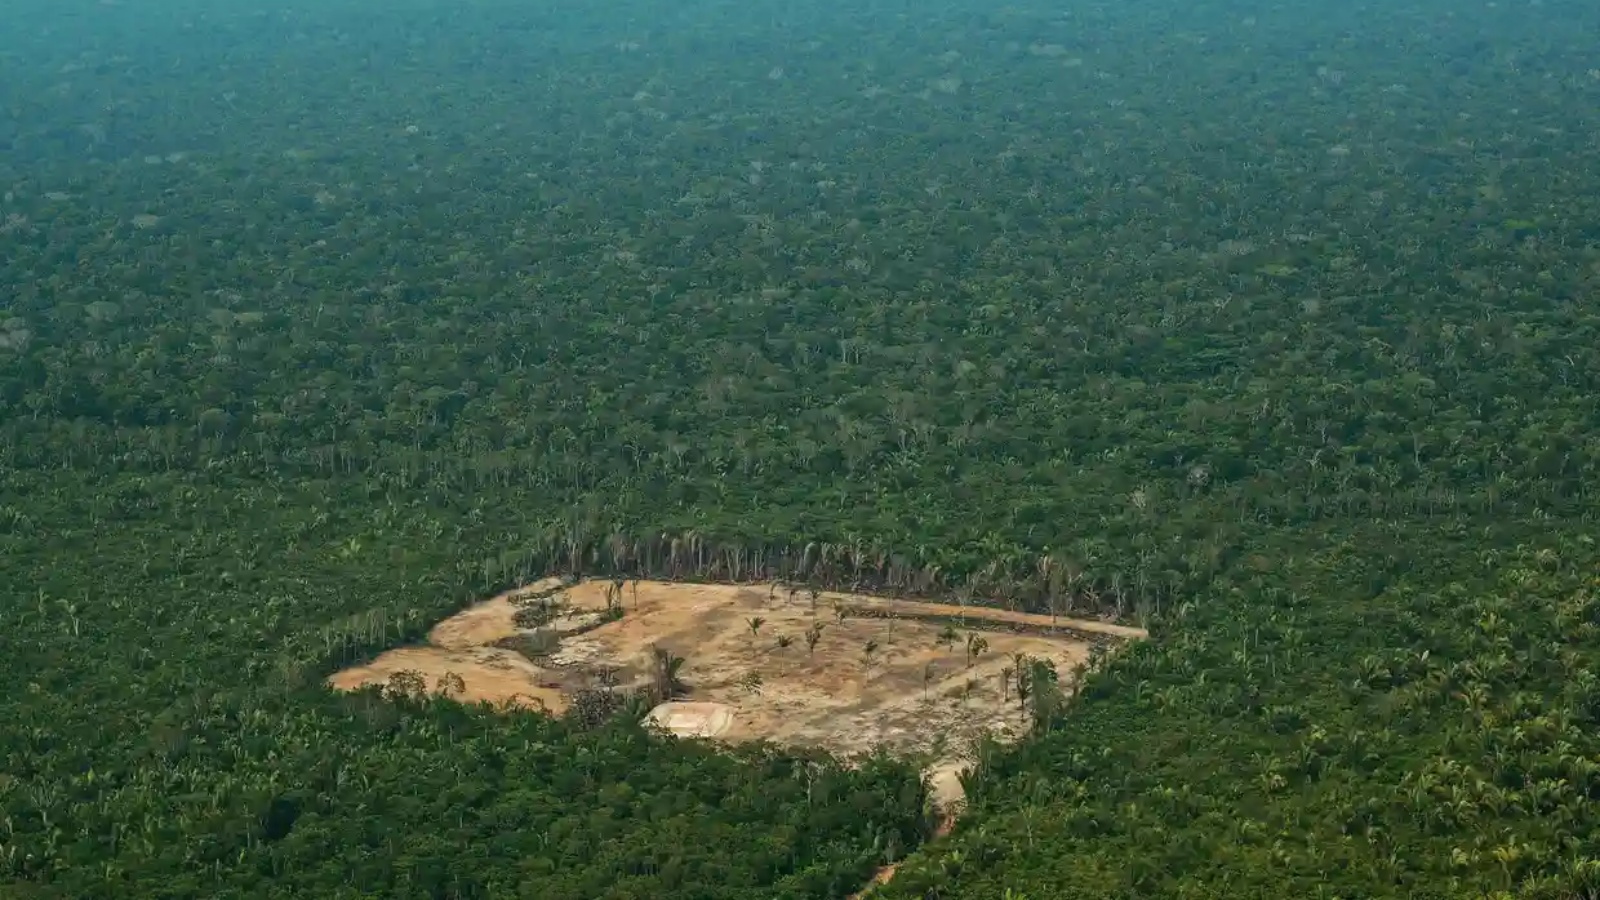 إزالة الغابات في منطقة الأمازون الغربية بالبرازيل